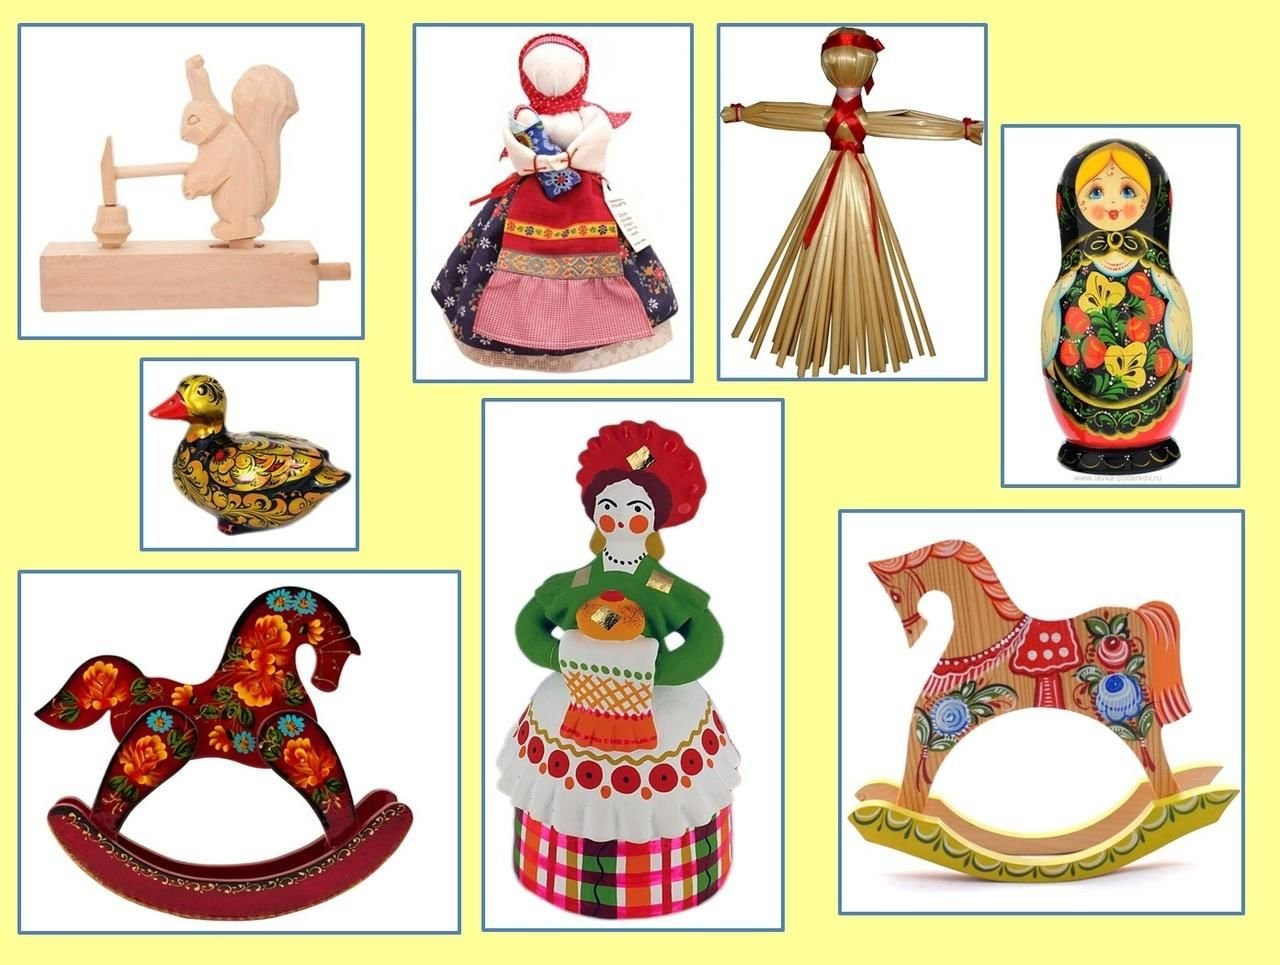 Народные игрушки, традиционные игрушки народных промыслов России для детей 5 лет